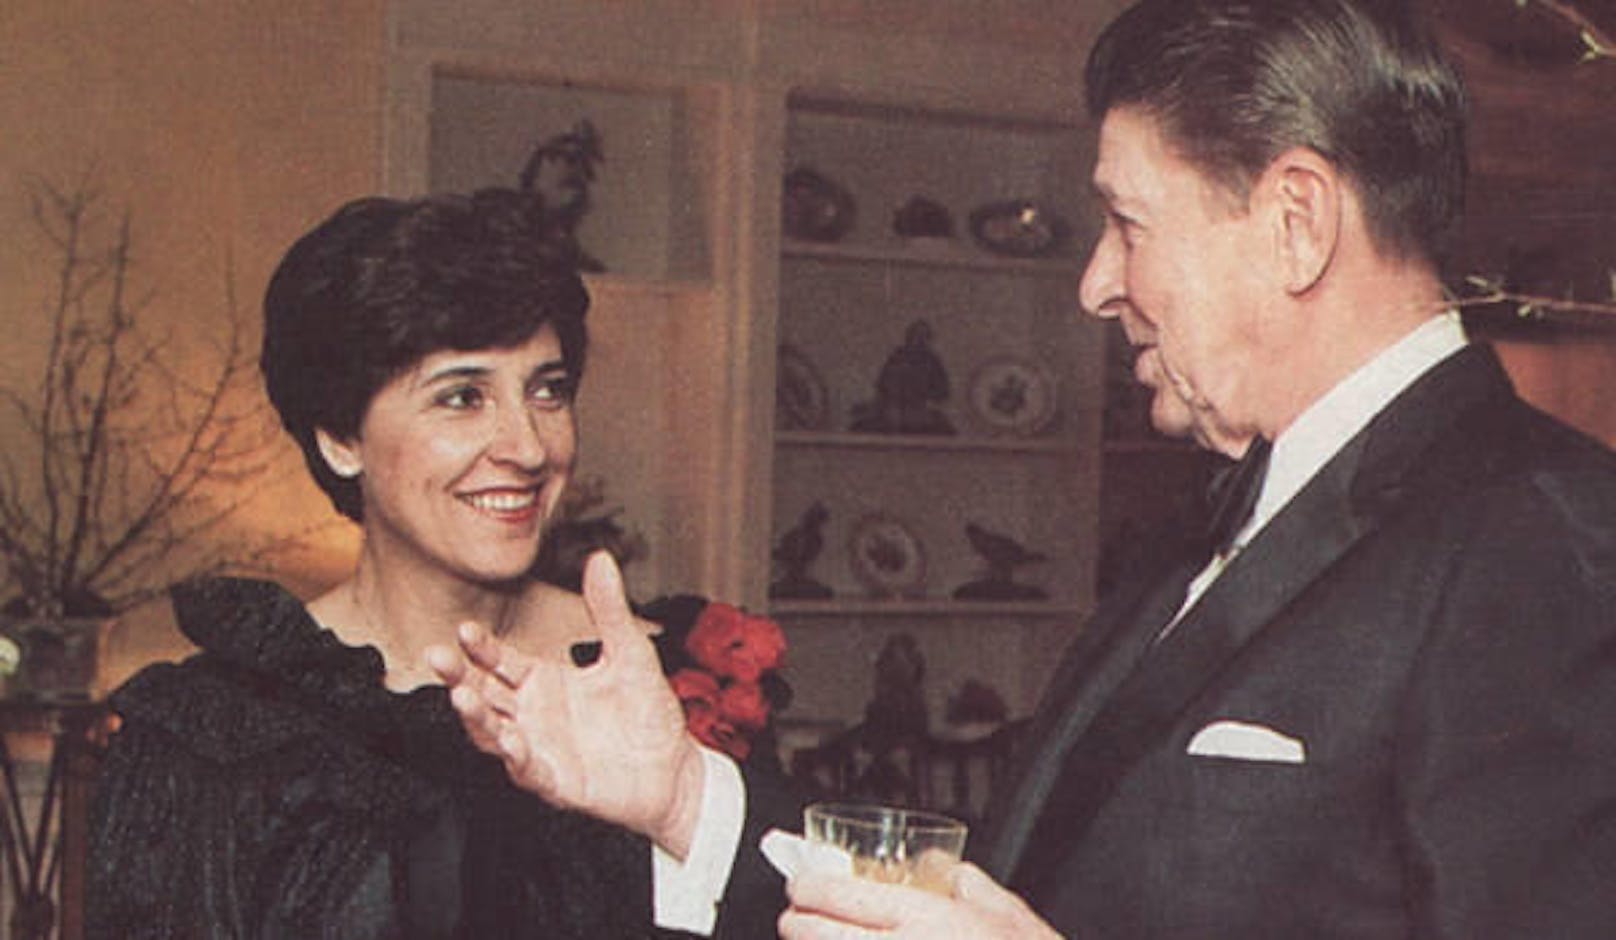 Jerman diente elf Präsidenten während rund sieben Jahrzehnten. Darunter Ronald Reagan (rechts im Bild)